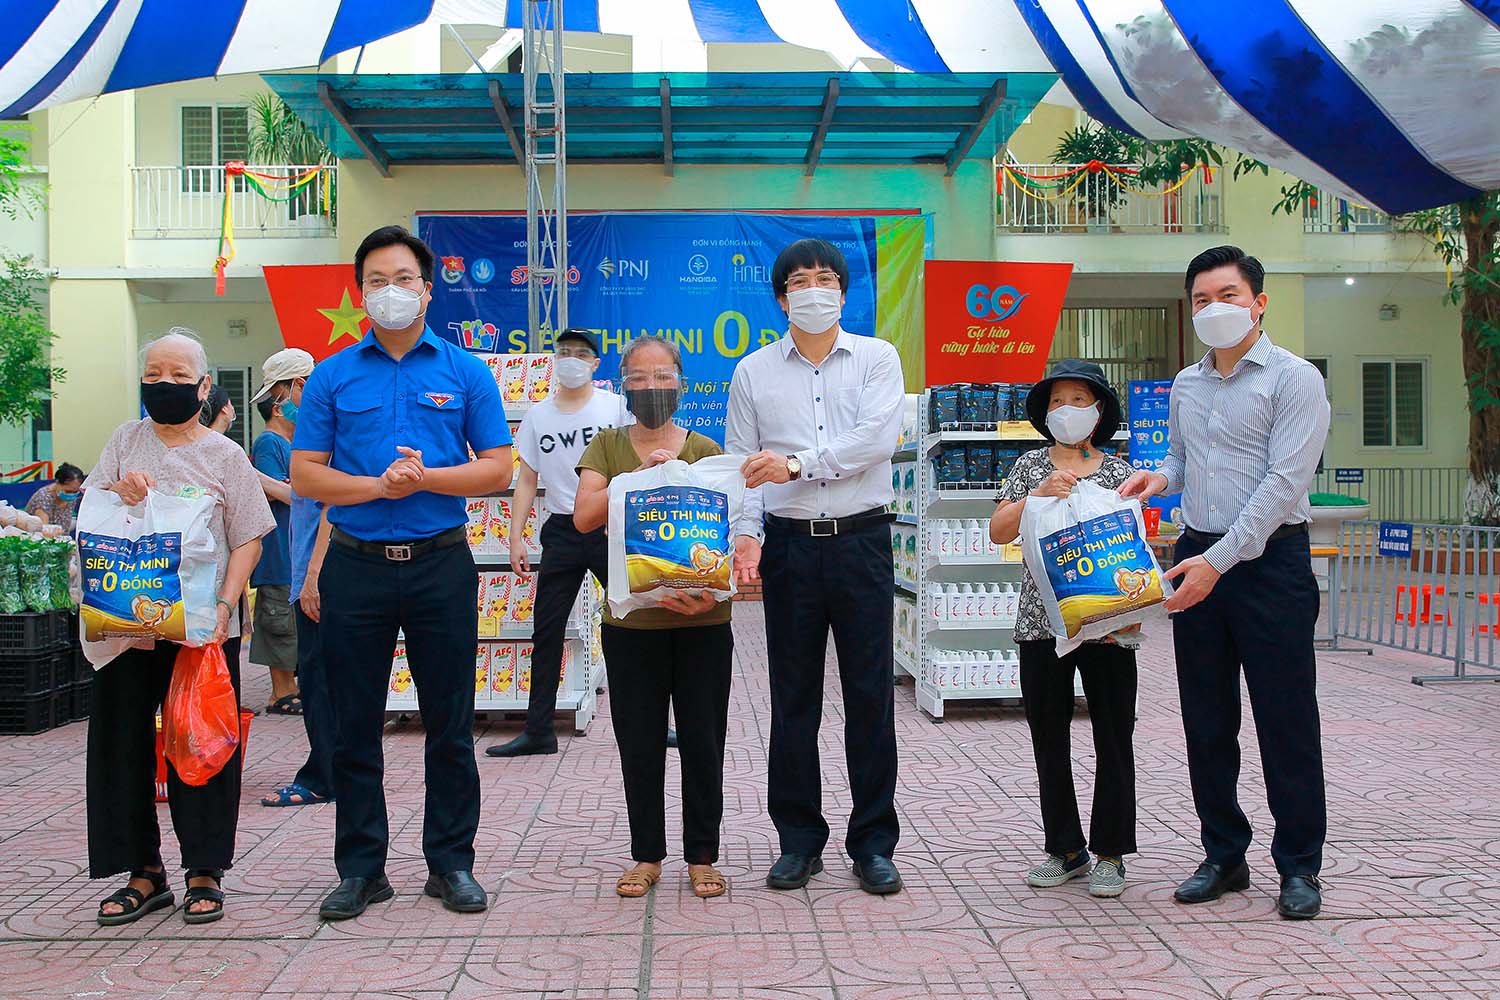 Được phát động từ ngày 1/8/2021, Siêu thị mini 0 đồng đặt mục tiêu trợ giúp cho người lao động khó khăn, công nhân mất việc làm, sinh viên nghèo do ảnh hưởng của dịch bệnh tại Hà Nội.